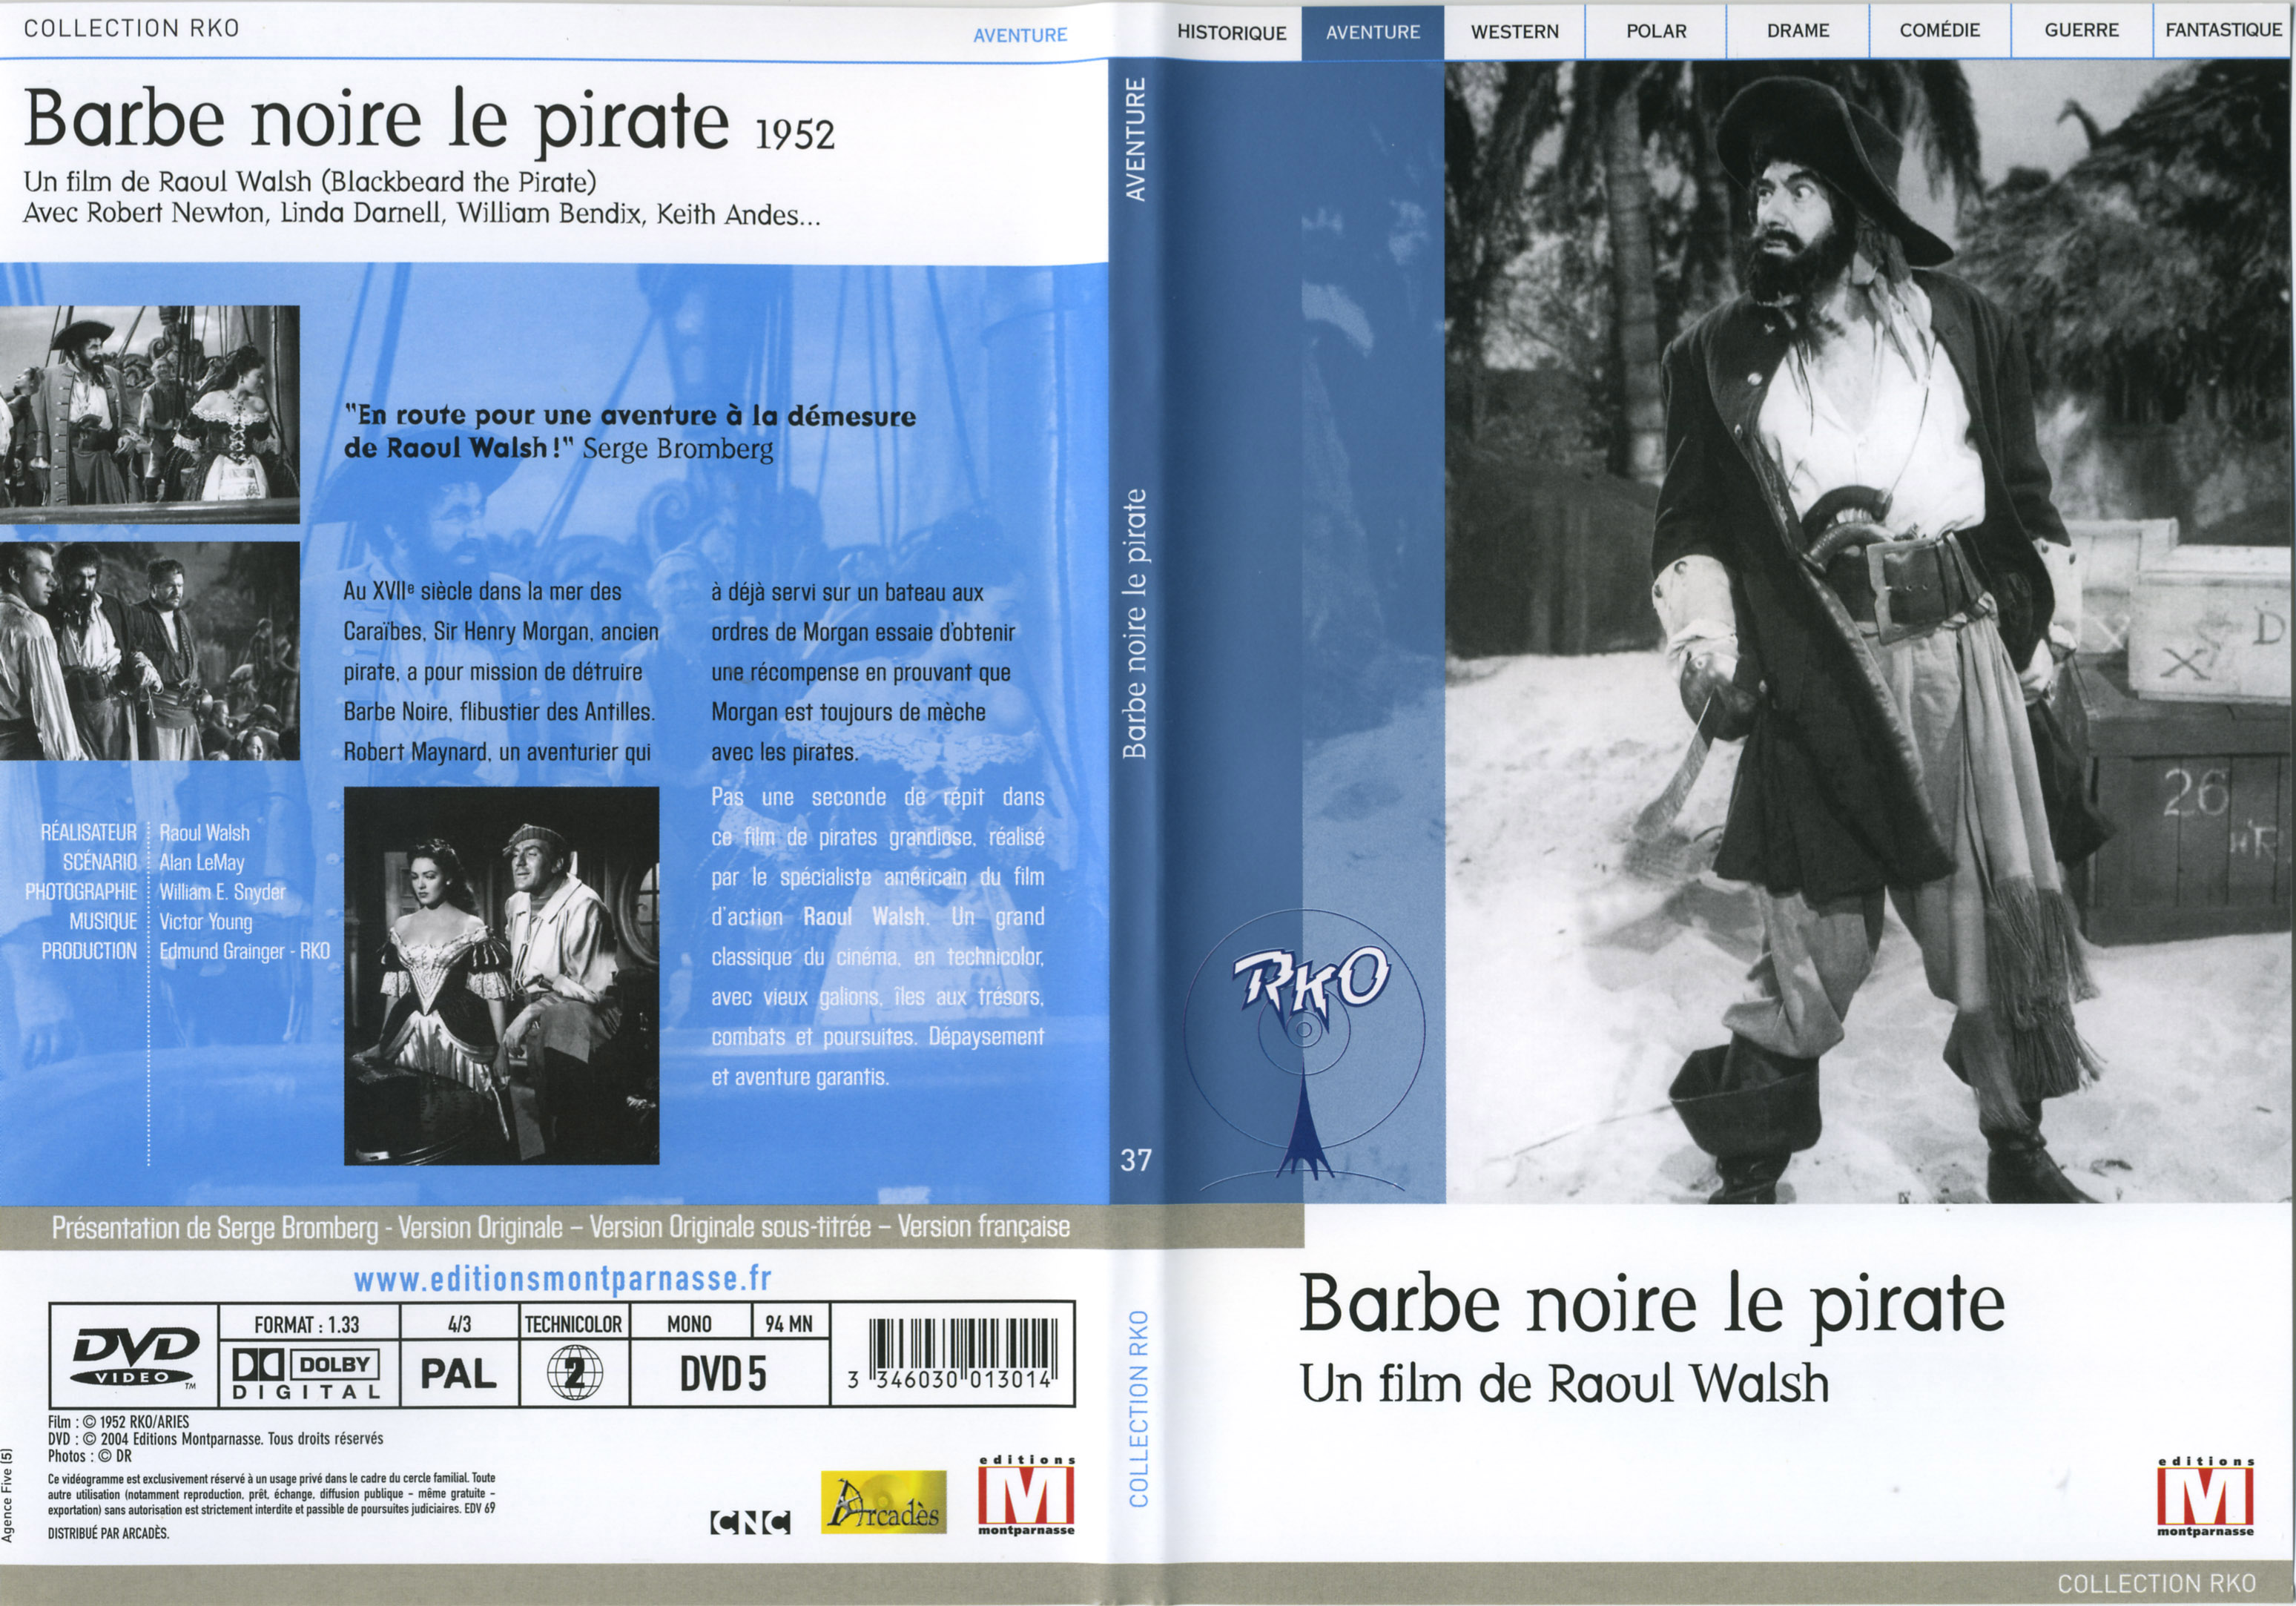 Jaquette DVD Barbe noire le pirate v2